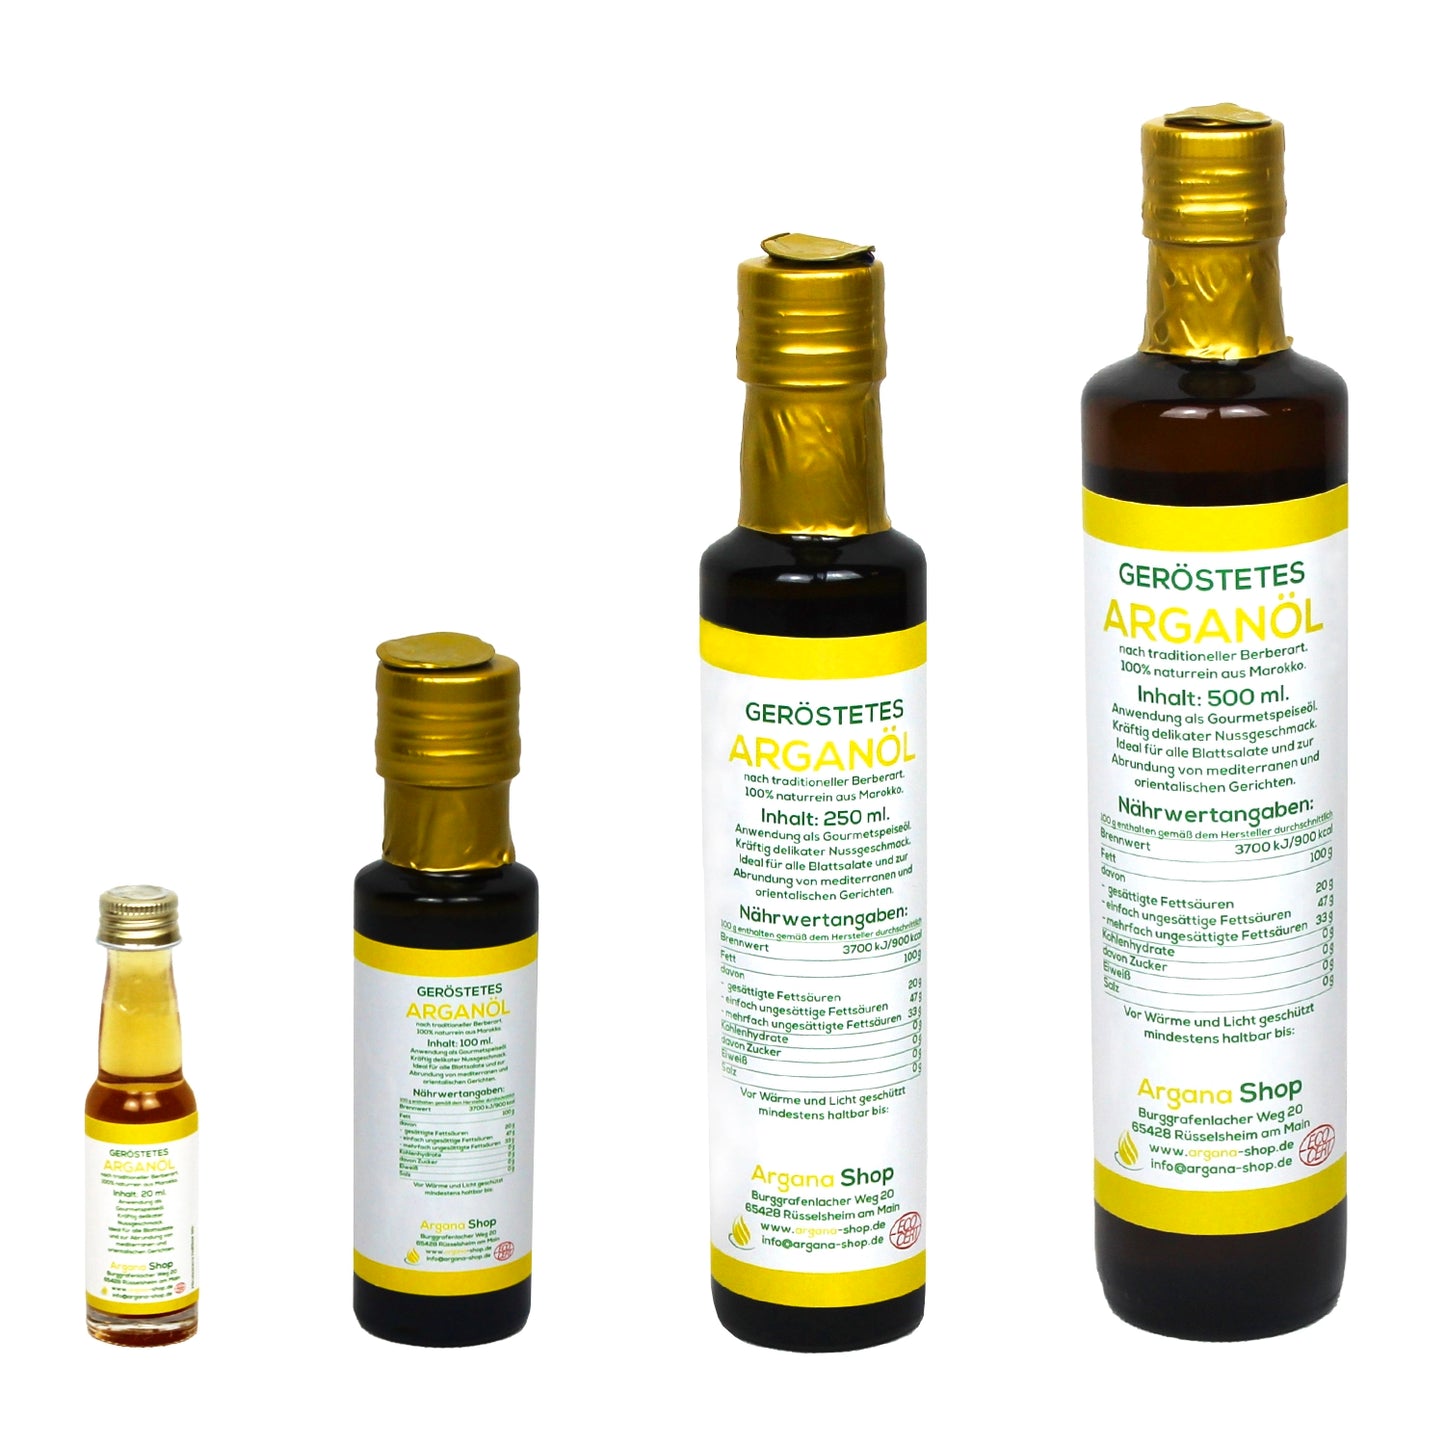 Arganöl, geröstet in verschiedenen Größen